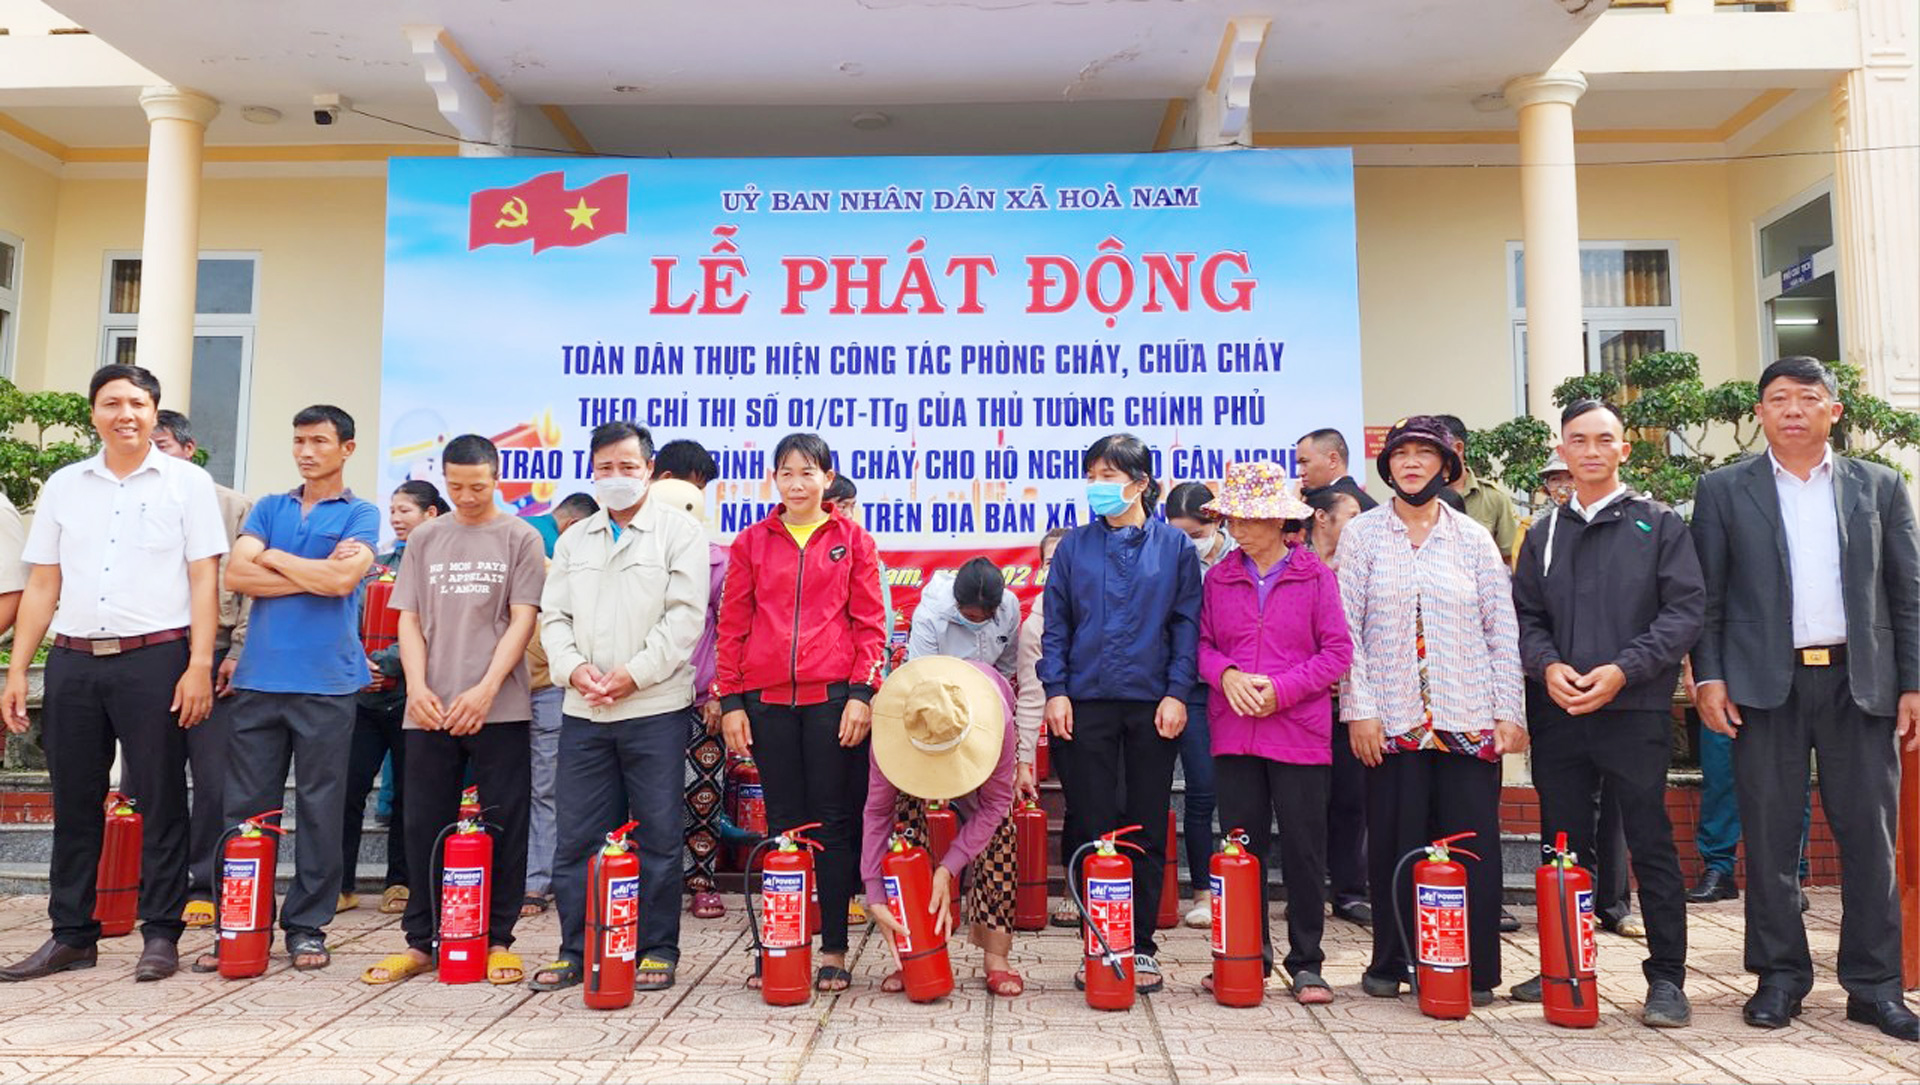 Trao bình chữa cháy cho hộ nghèo trên địa bàn xã Hoà Nam